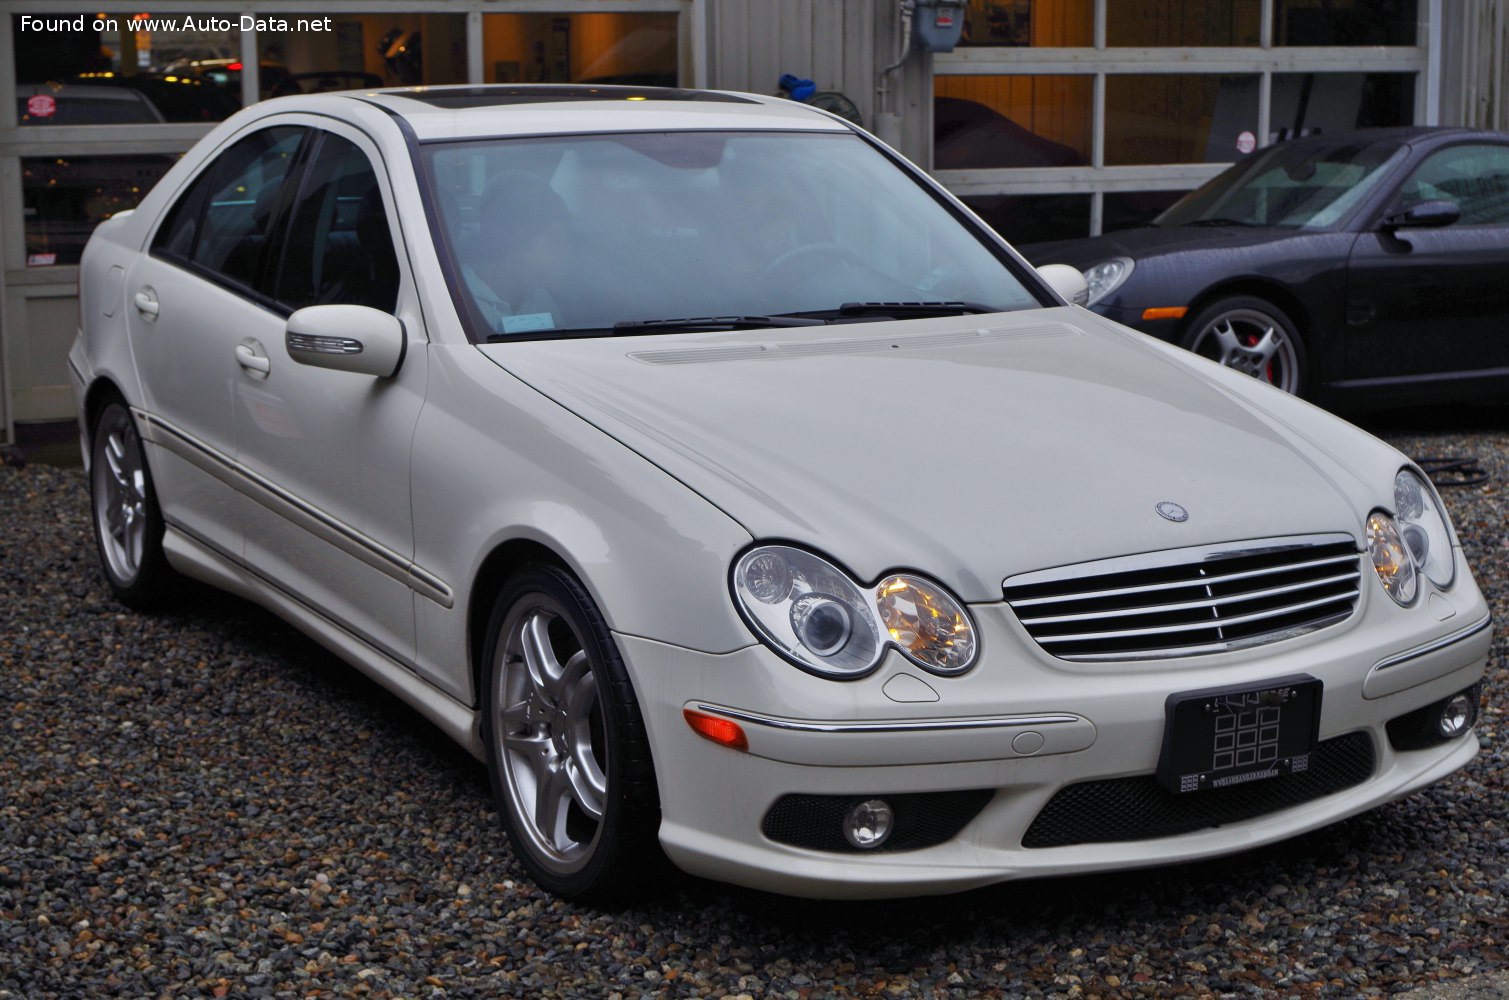 https://www.auto-data.net/images/f70/Mercedes-Benz-C-class-W203-facelift-2004.jpg